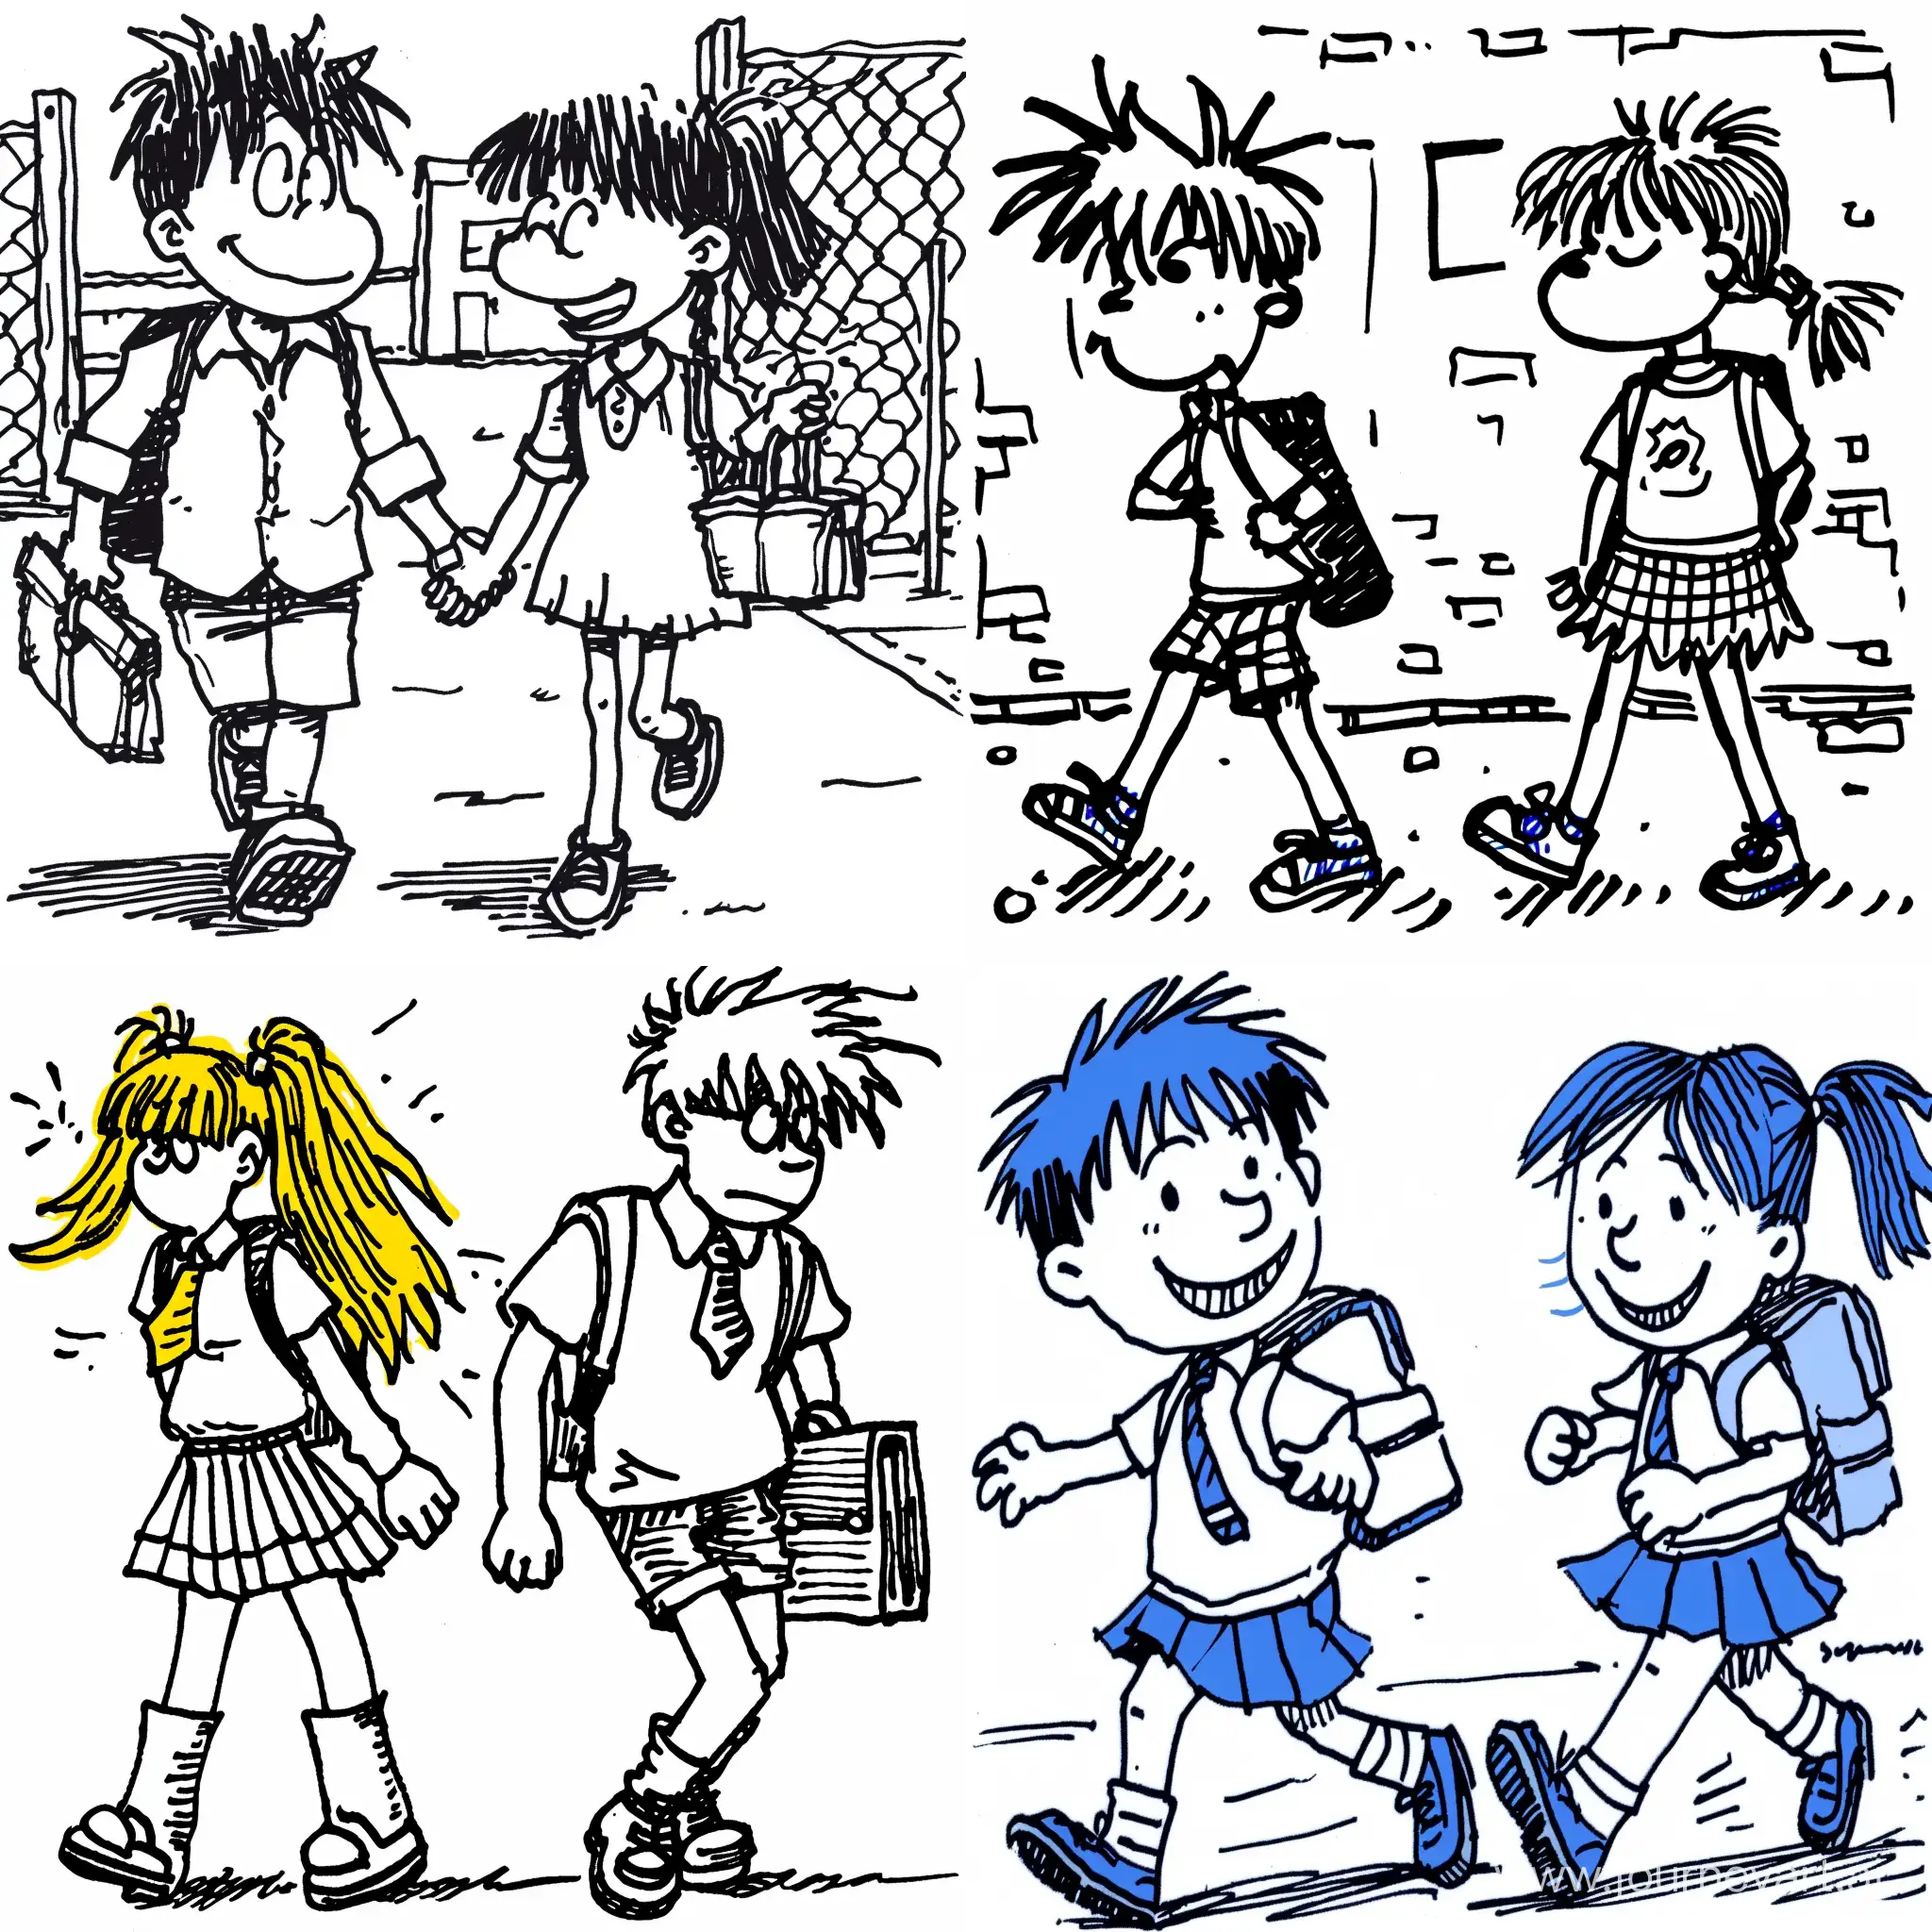 cartoon 1boy and 1girl waling to school  --sref  https://4.bp.blogspot.com/-mD1nCVDLoVk/W9--tNc-aKI/AAAAAAAASW4/En07romDrEEiVtfxKOiMxiETSnGt8QnNACK4BGAYYCw/s1600/LAT+My+Life+and+Cartoons2.jpg